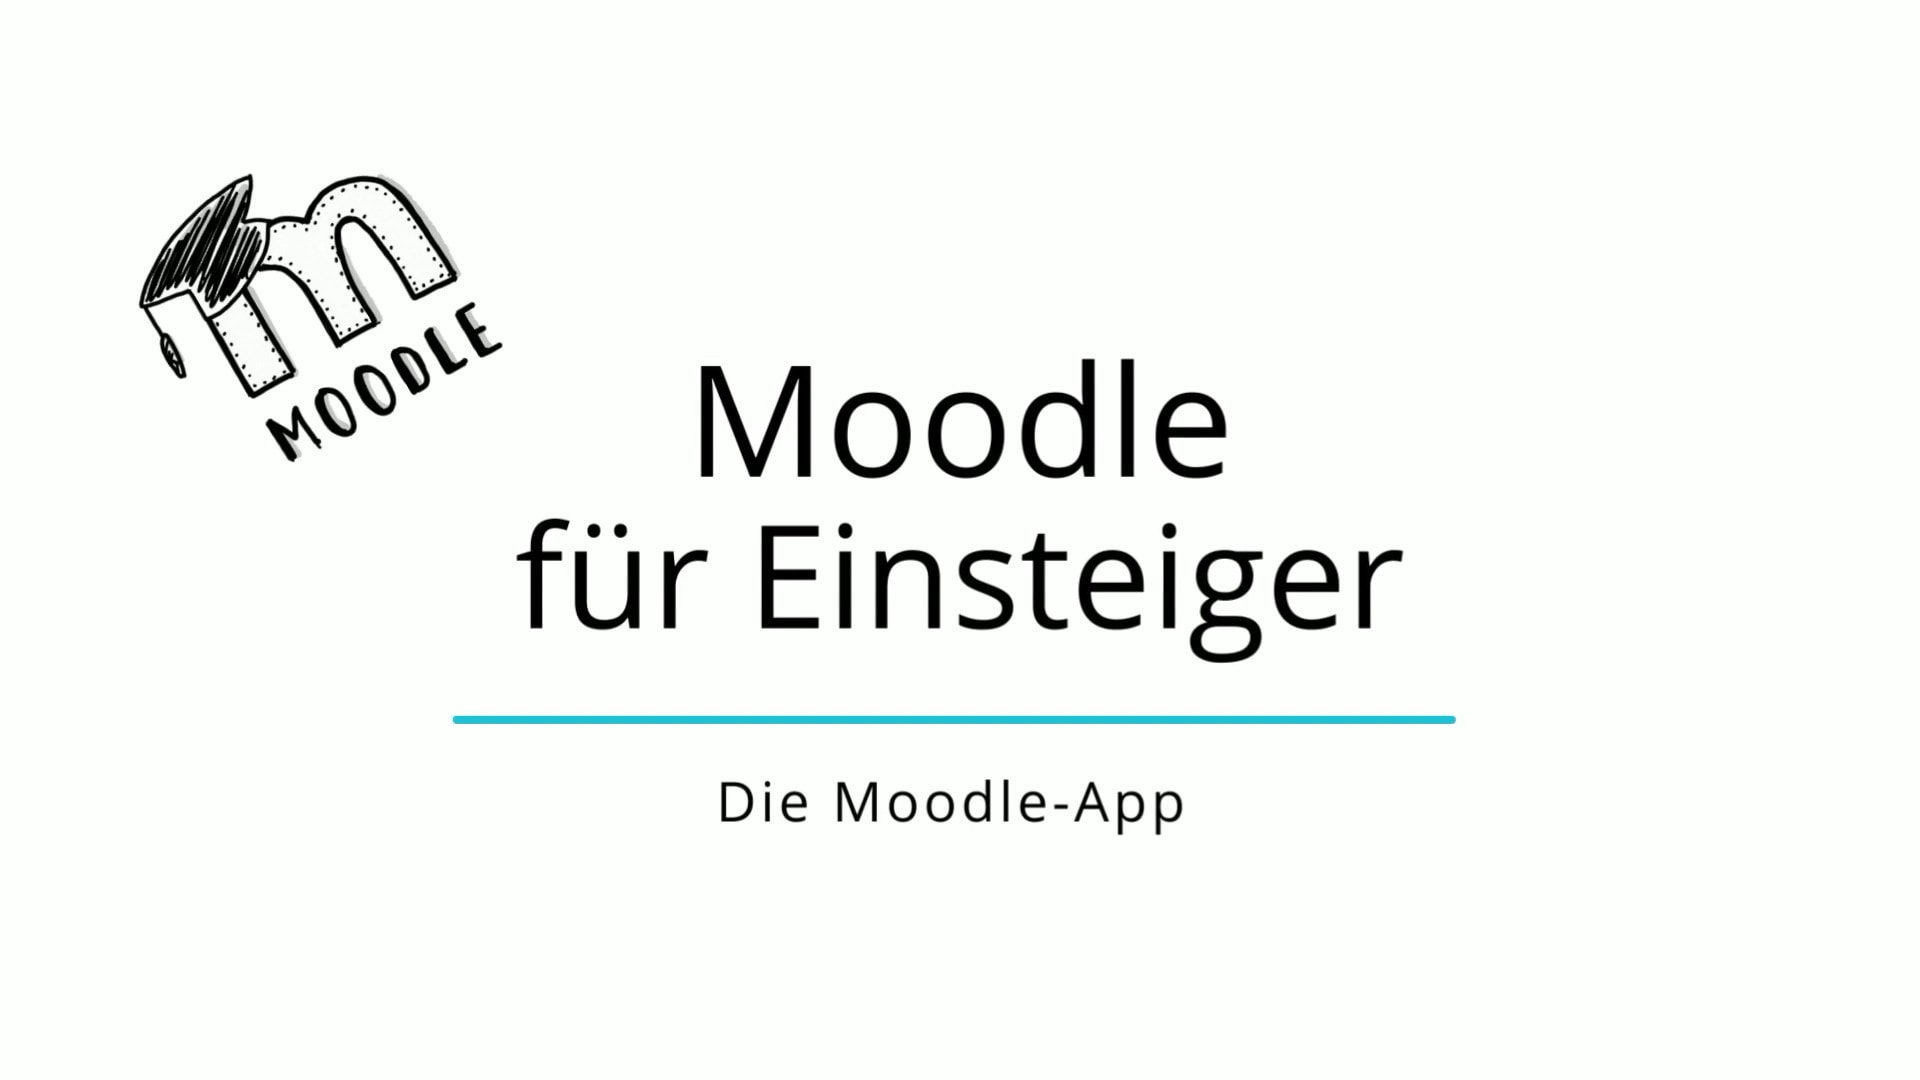 Die Moodle-App